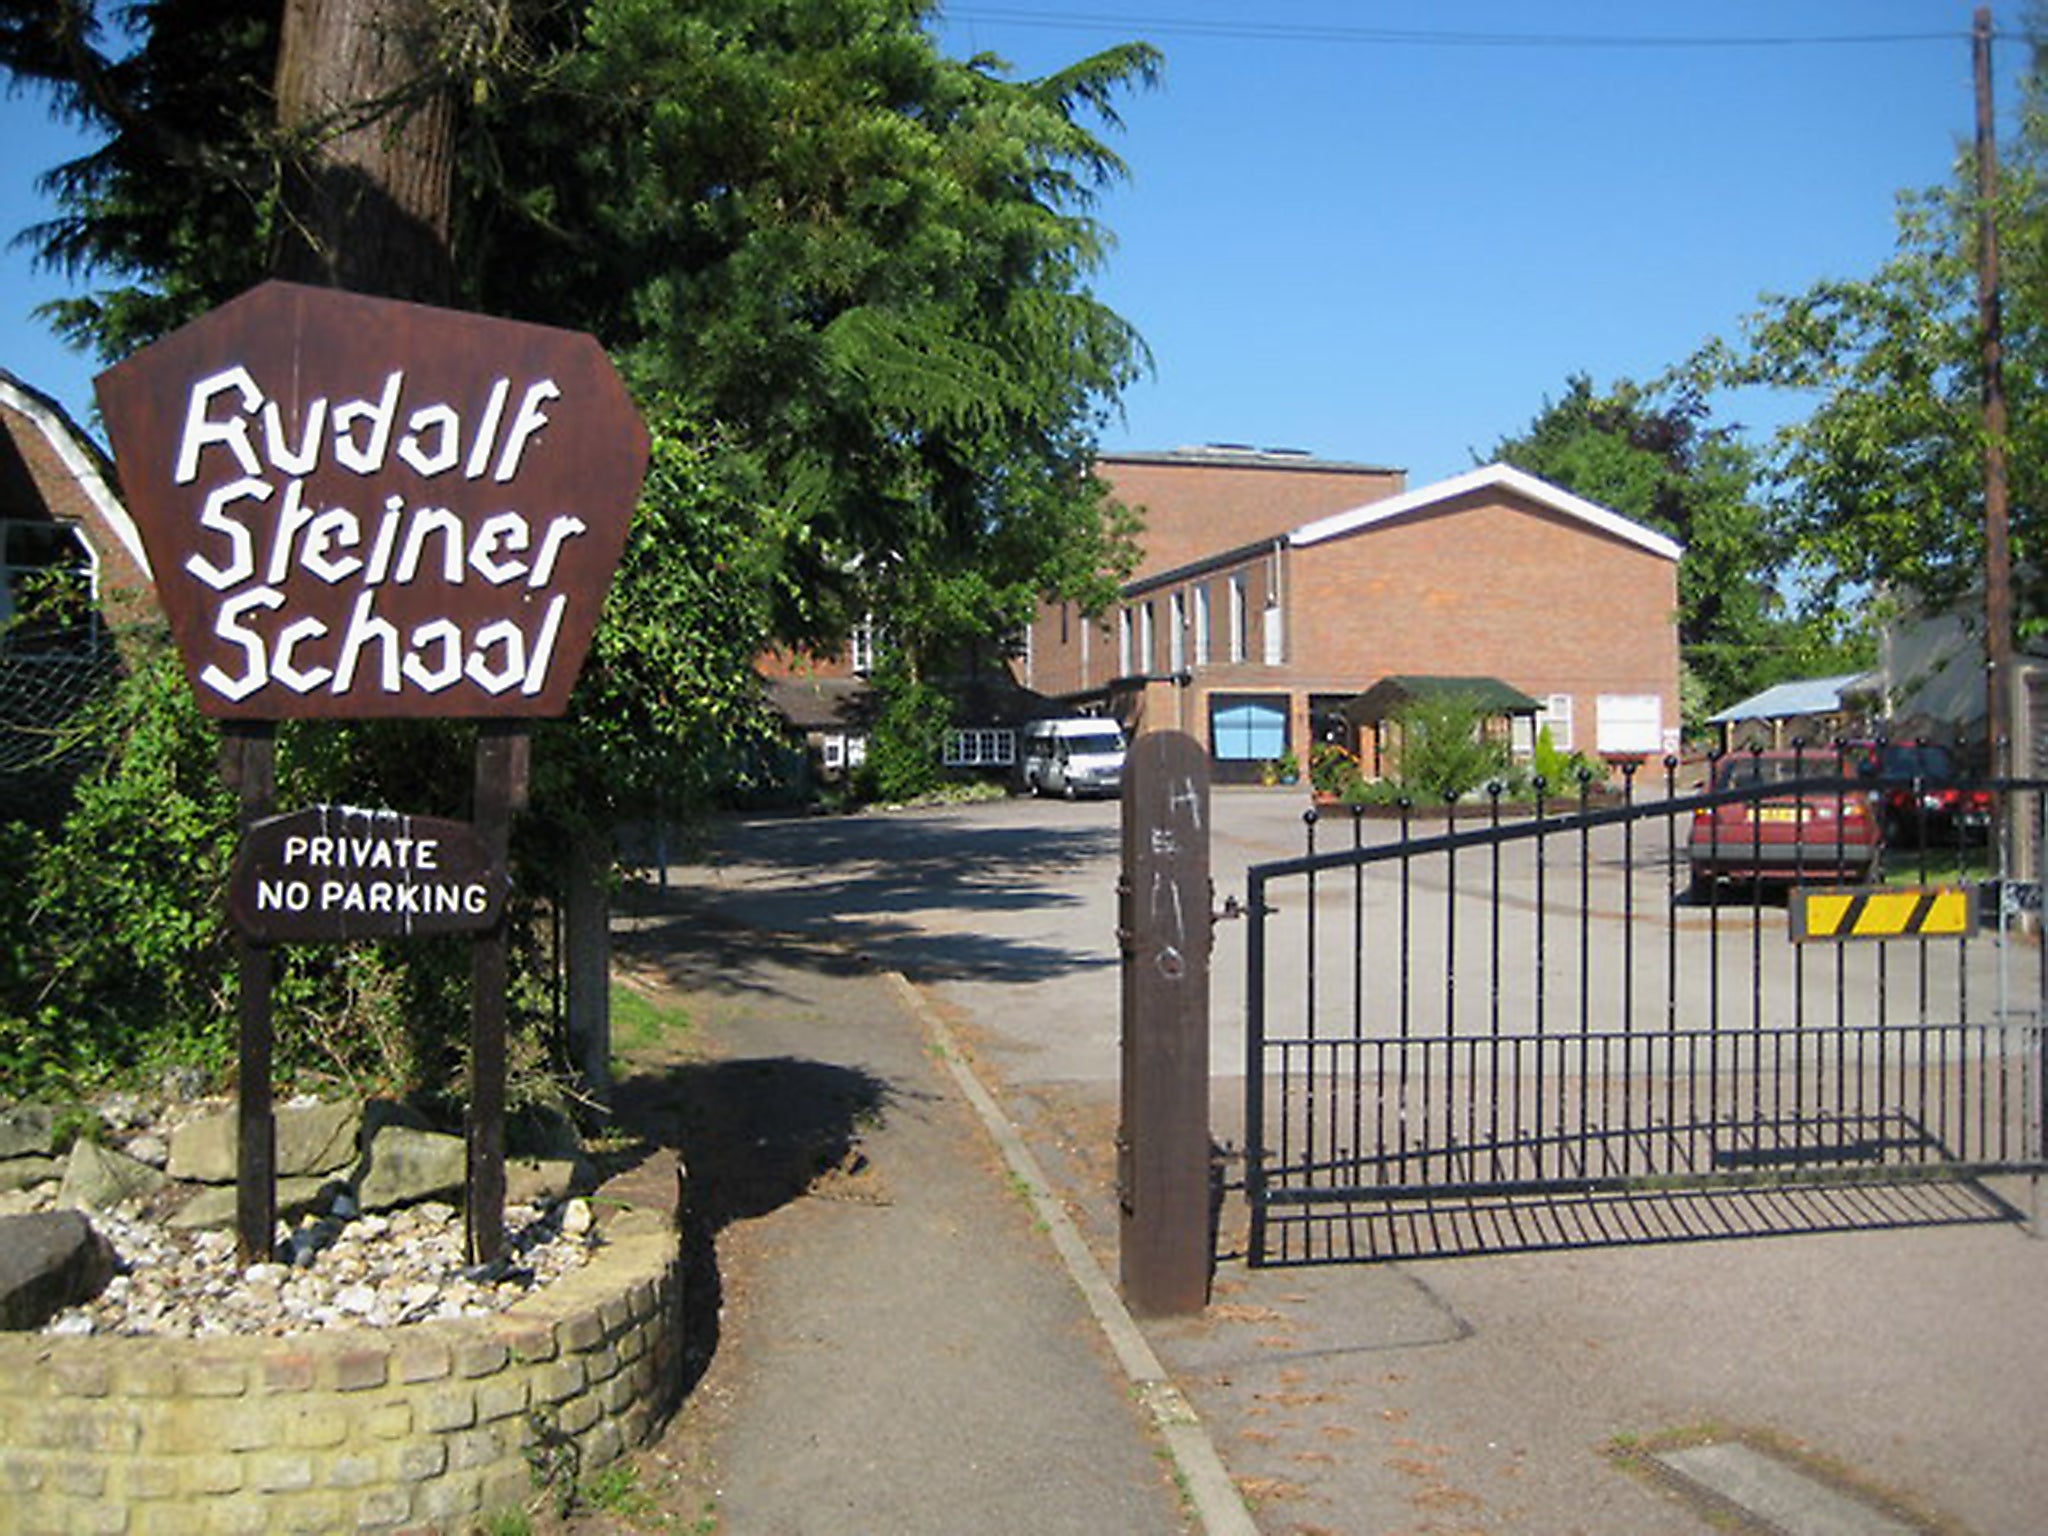 Rudolf Steiner School